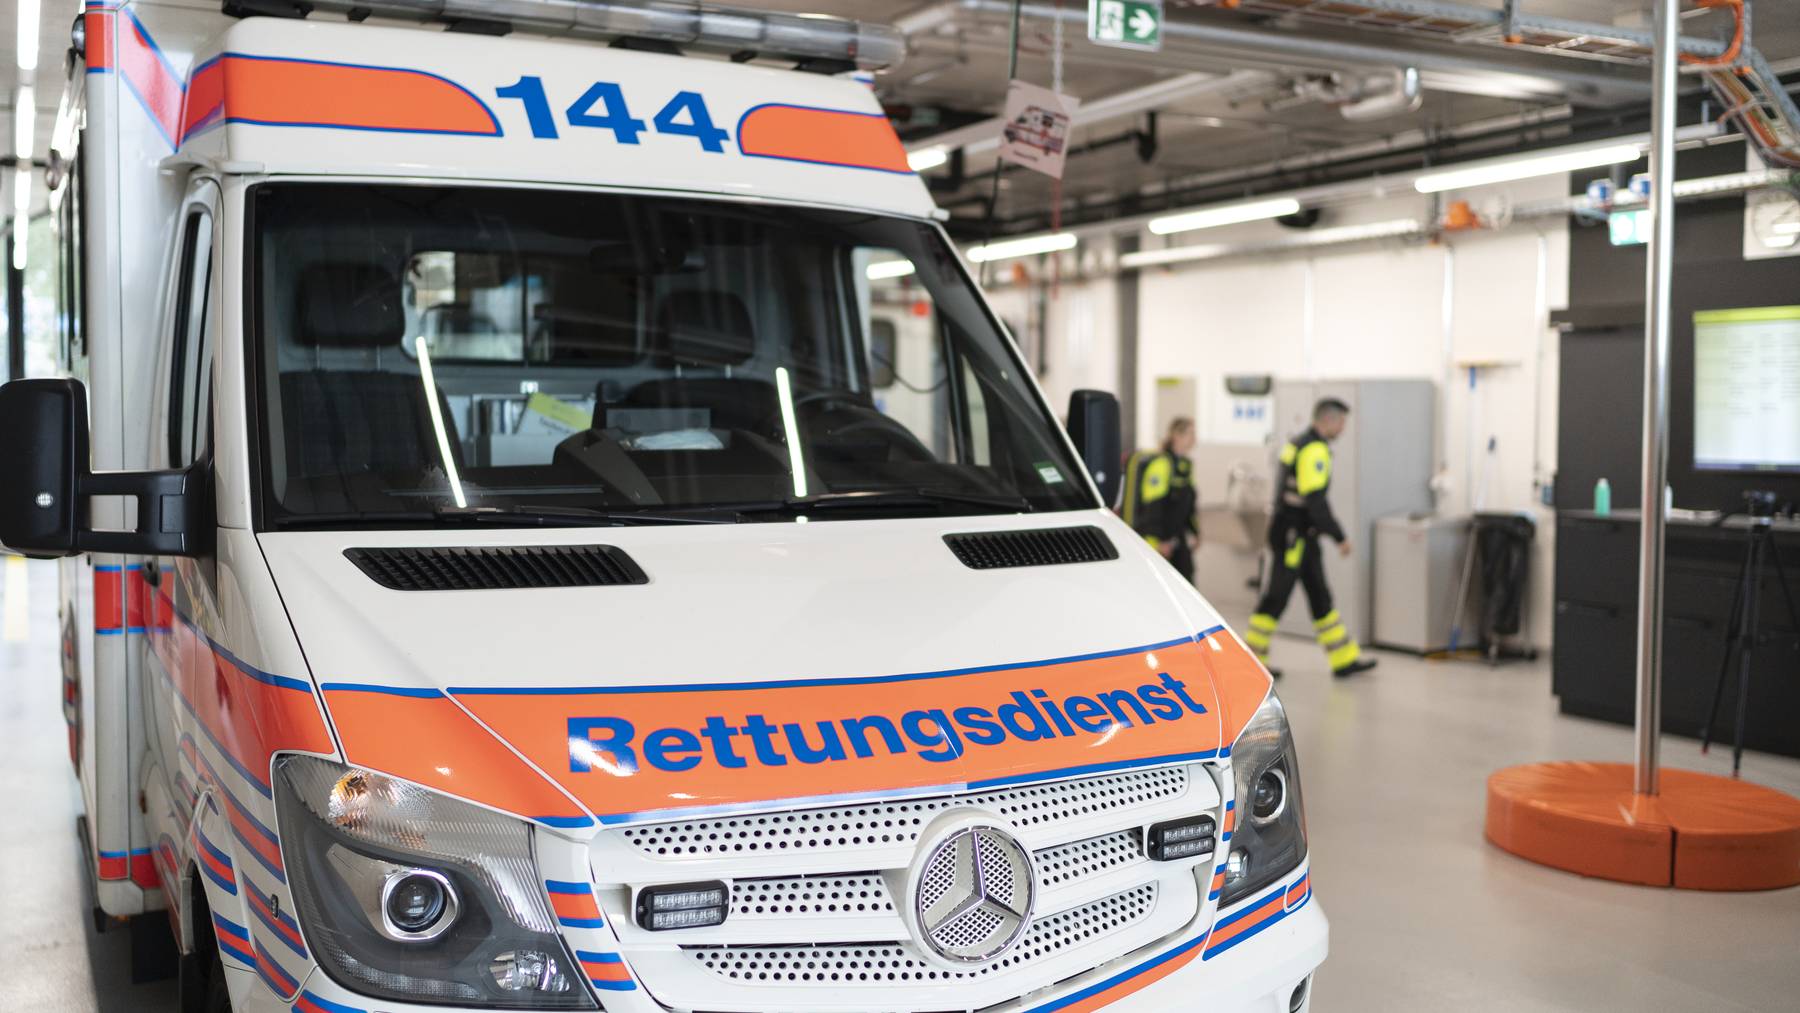 Sunrise-Kunden in den Kantonen Luzern, Obwalden und Nidwalden konnten über die Nummer 144 keine Ambulanz alarmieren.